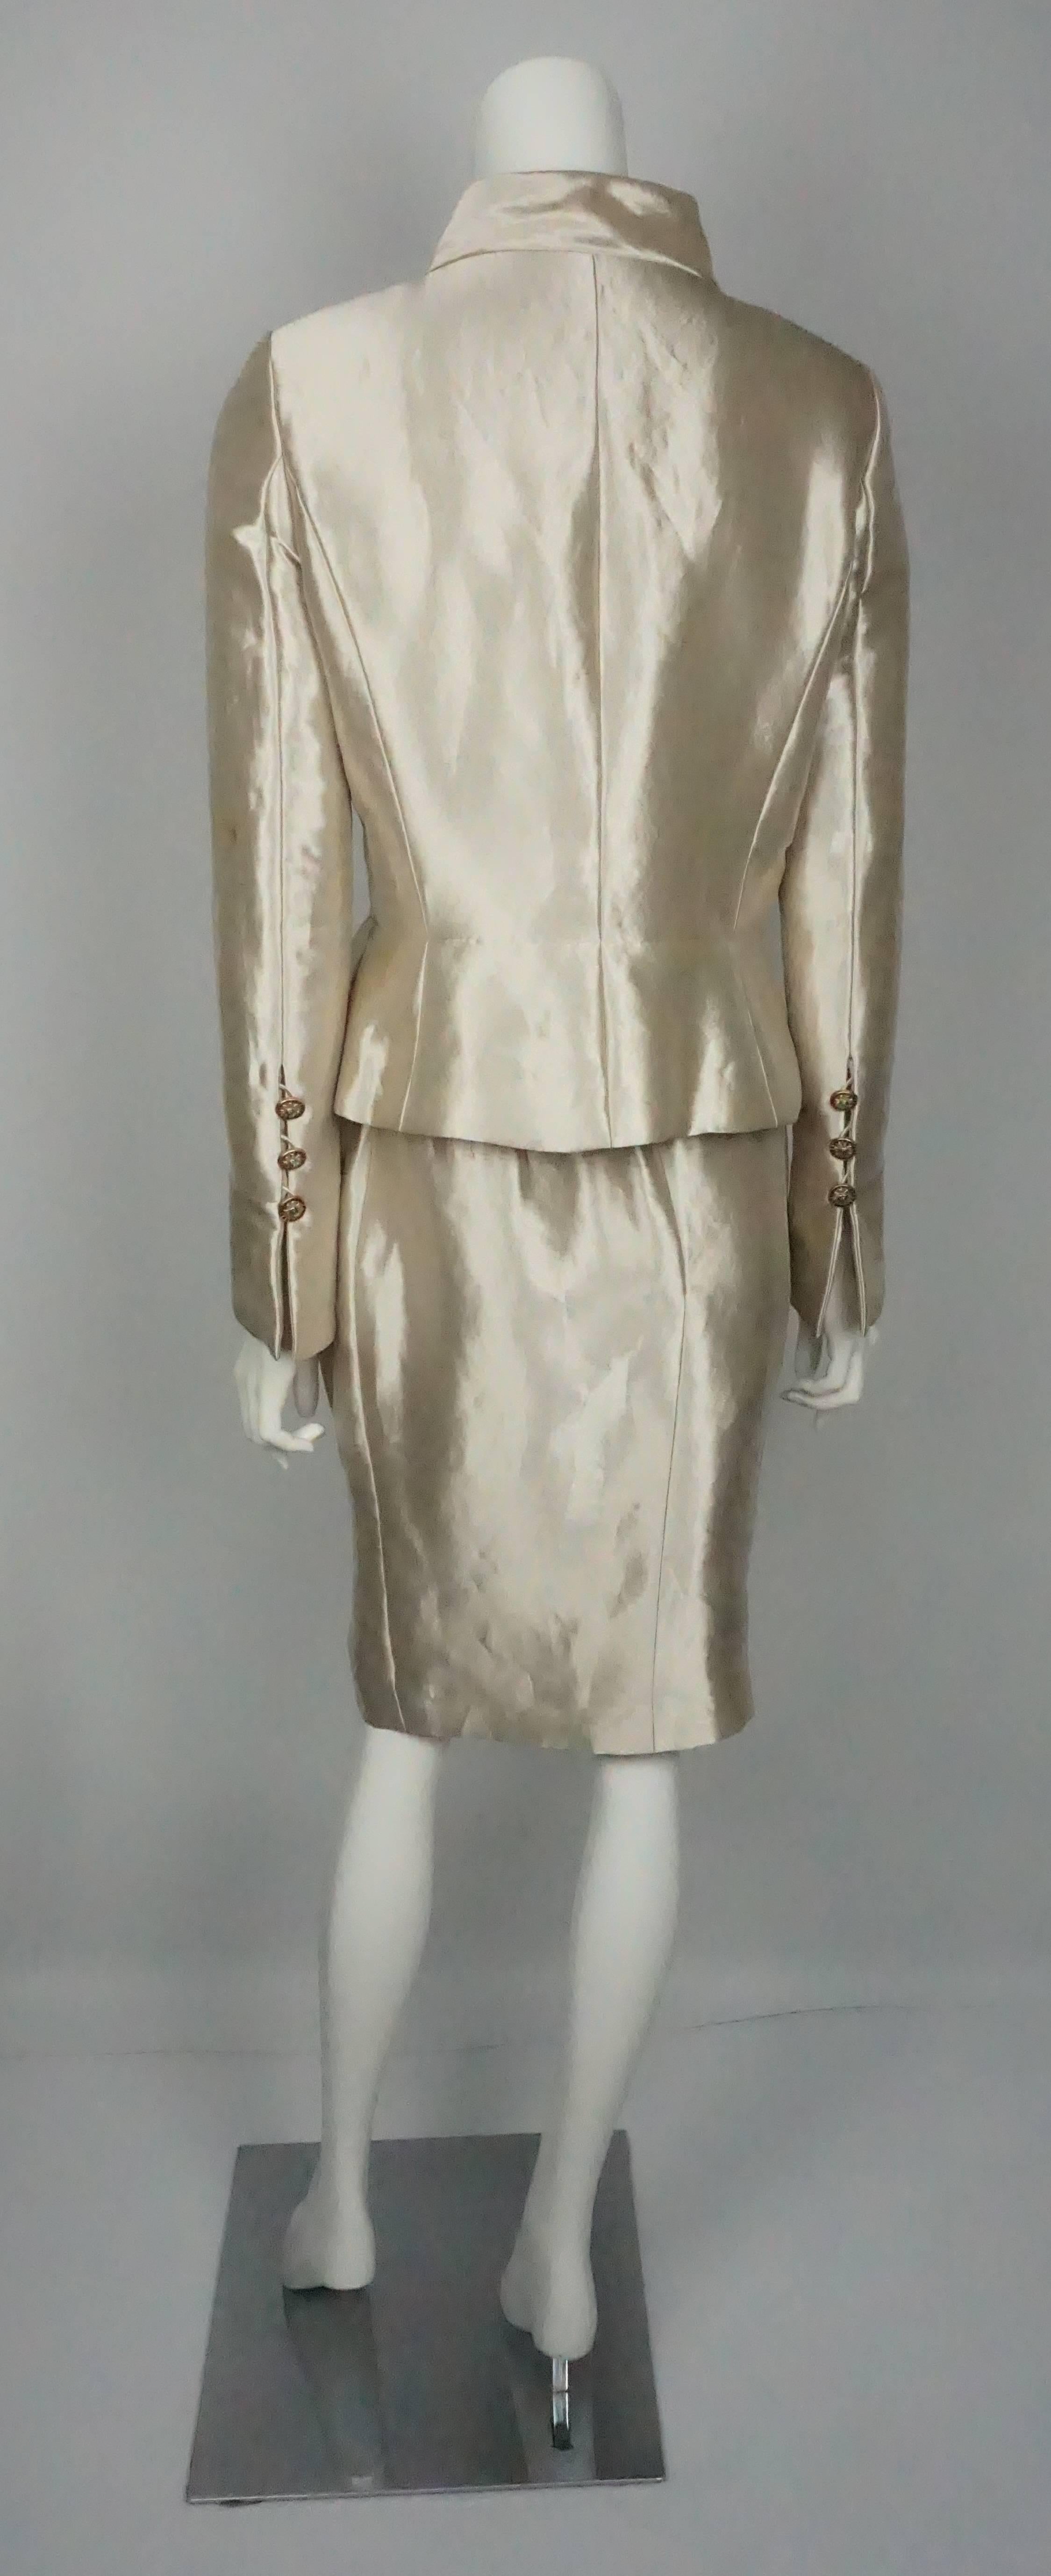 Chanel Gold Metallic Seide Lame Skirt Anzug mit Gripoix Knöpfe - 40  Dieses Laufstegteil war Look 45 bei der Chanel Pre-Fall 2012 Modenschau. Diese Kreation von Karl Lagerfeld ist ein Kunstwerk. Die Seiden-Lame-Jacke hat 6 spektakuläre grüne und